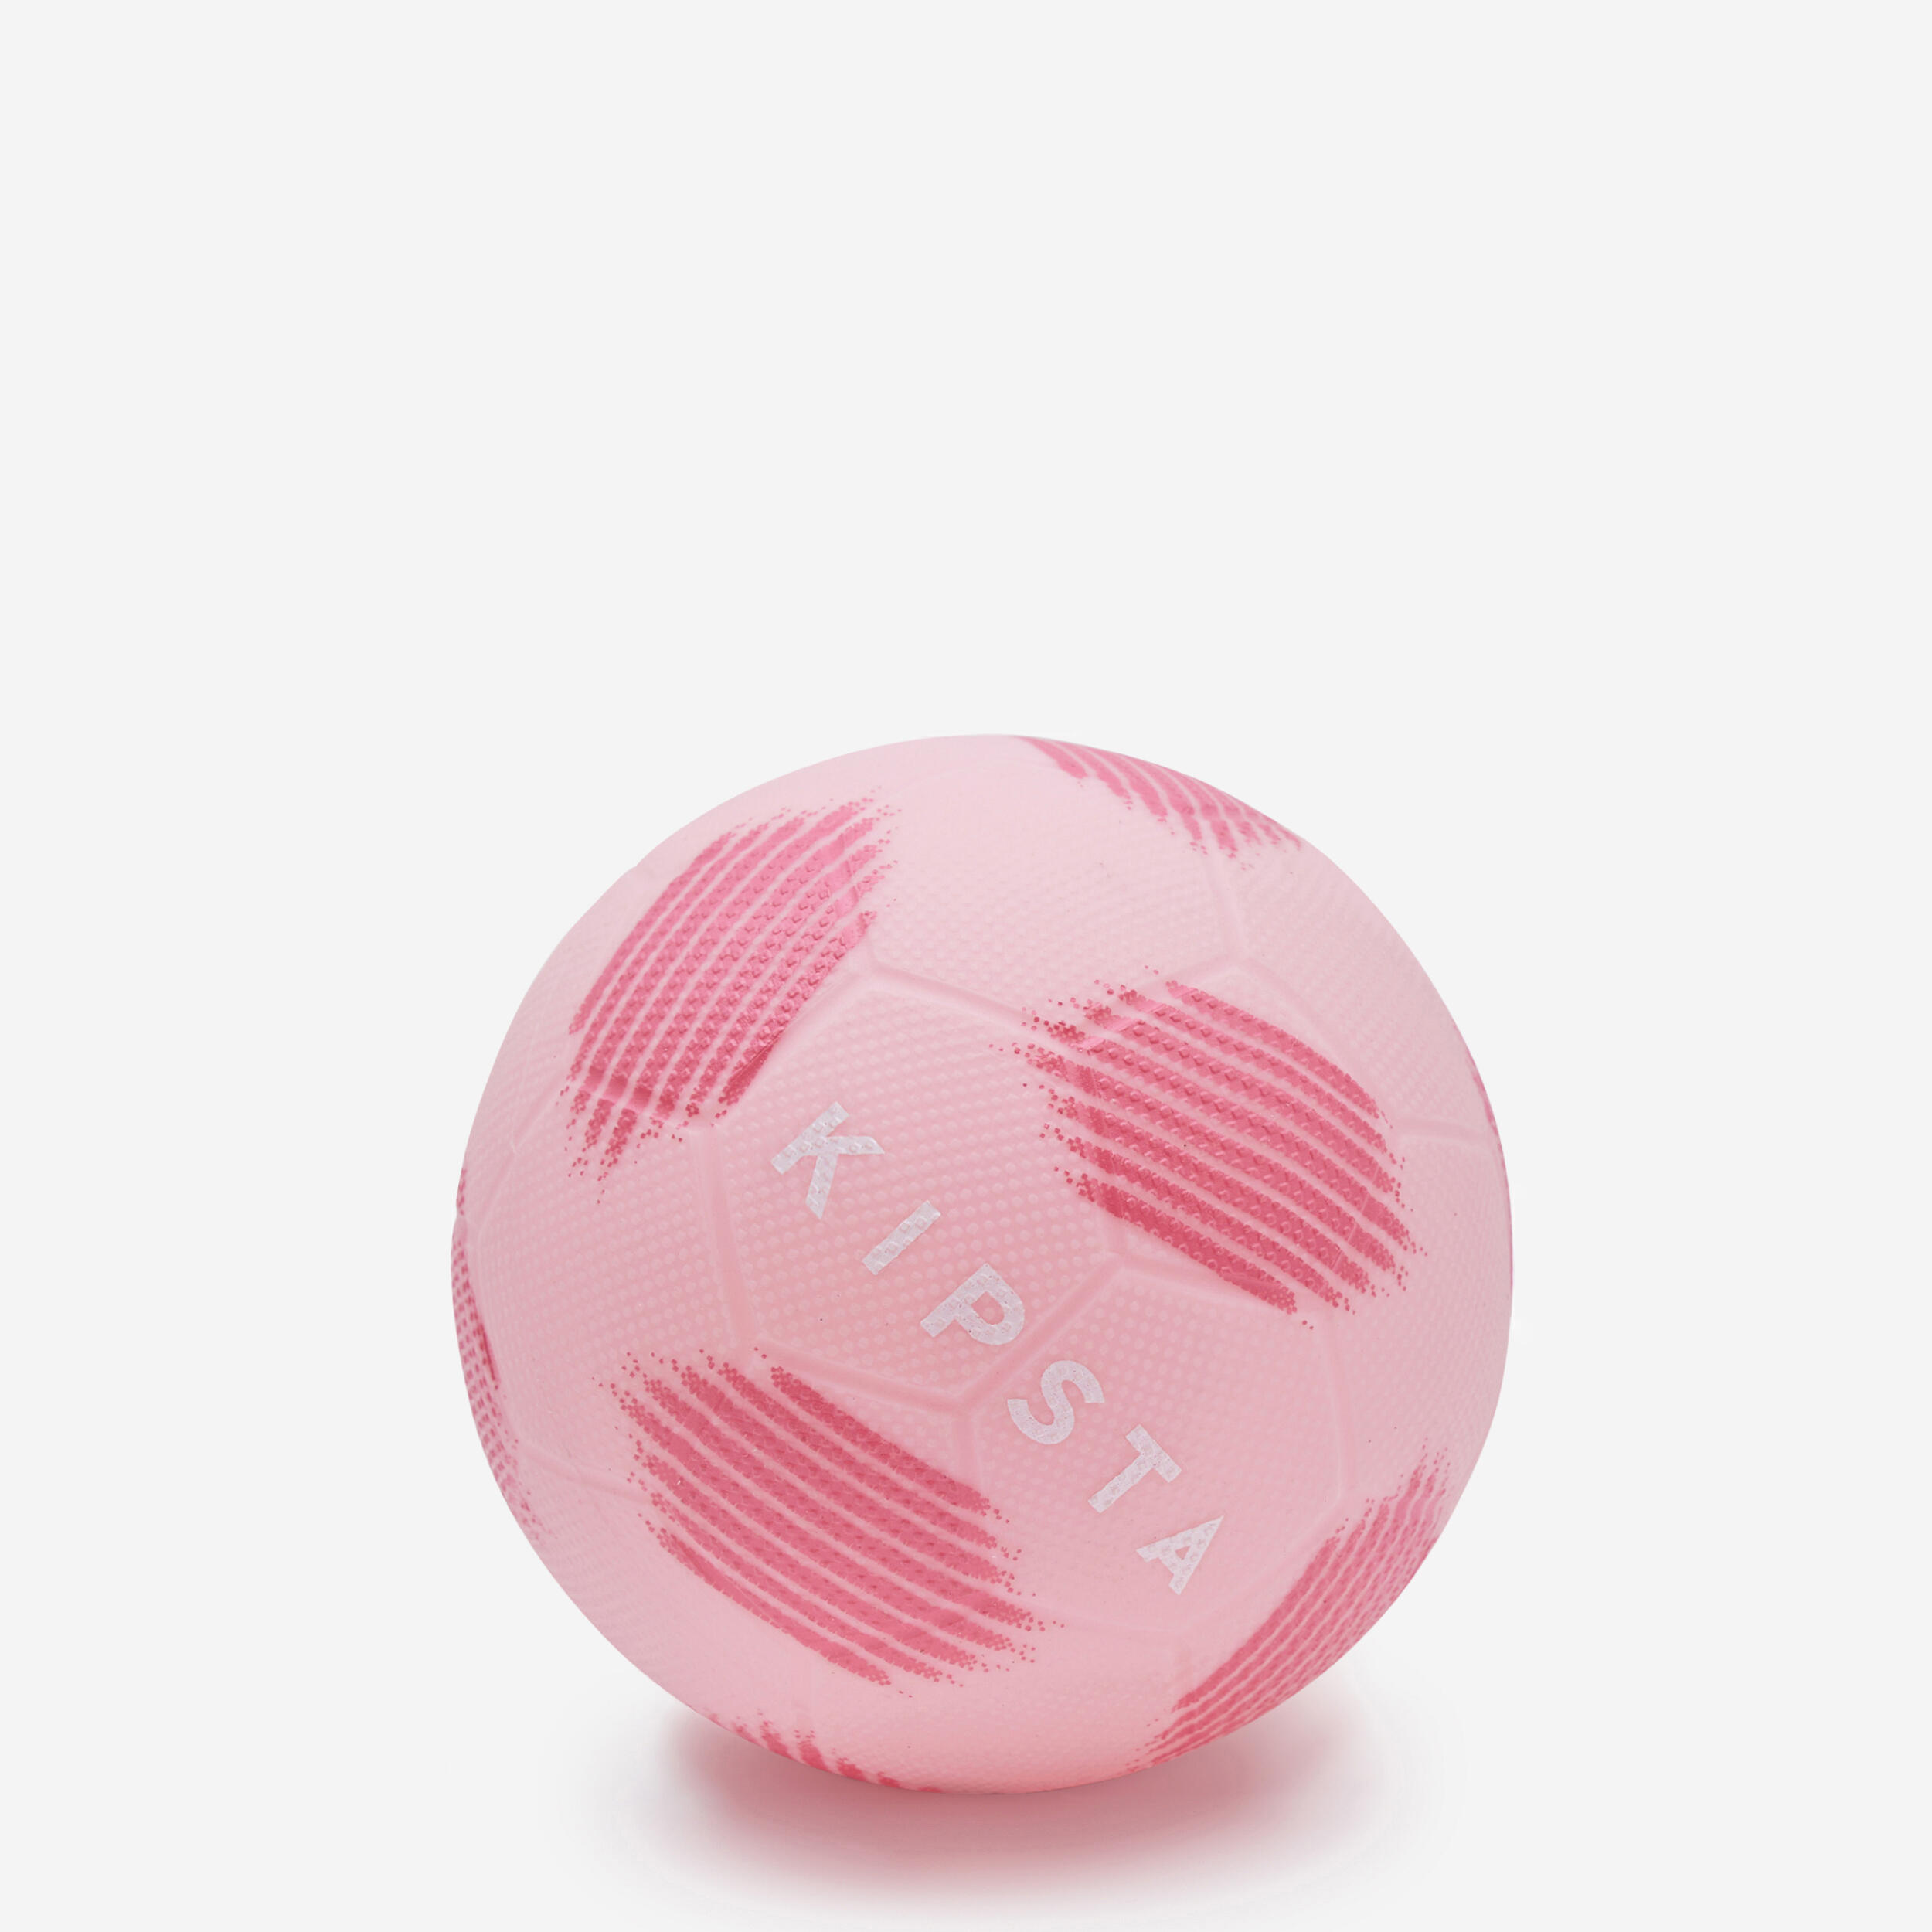 цена Мини-футбольный мяч Sunny 300, размер 1, пастельно-розовый Kipsta